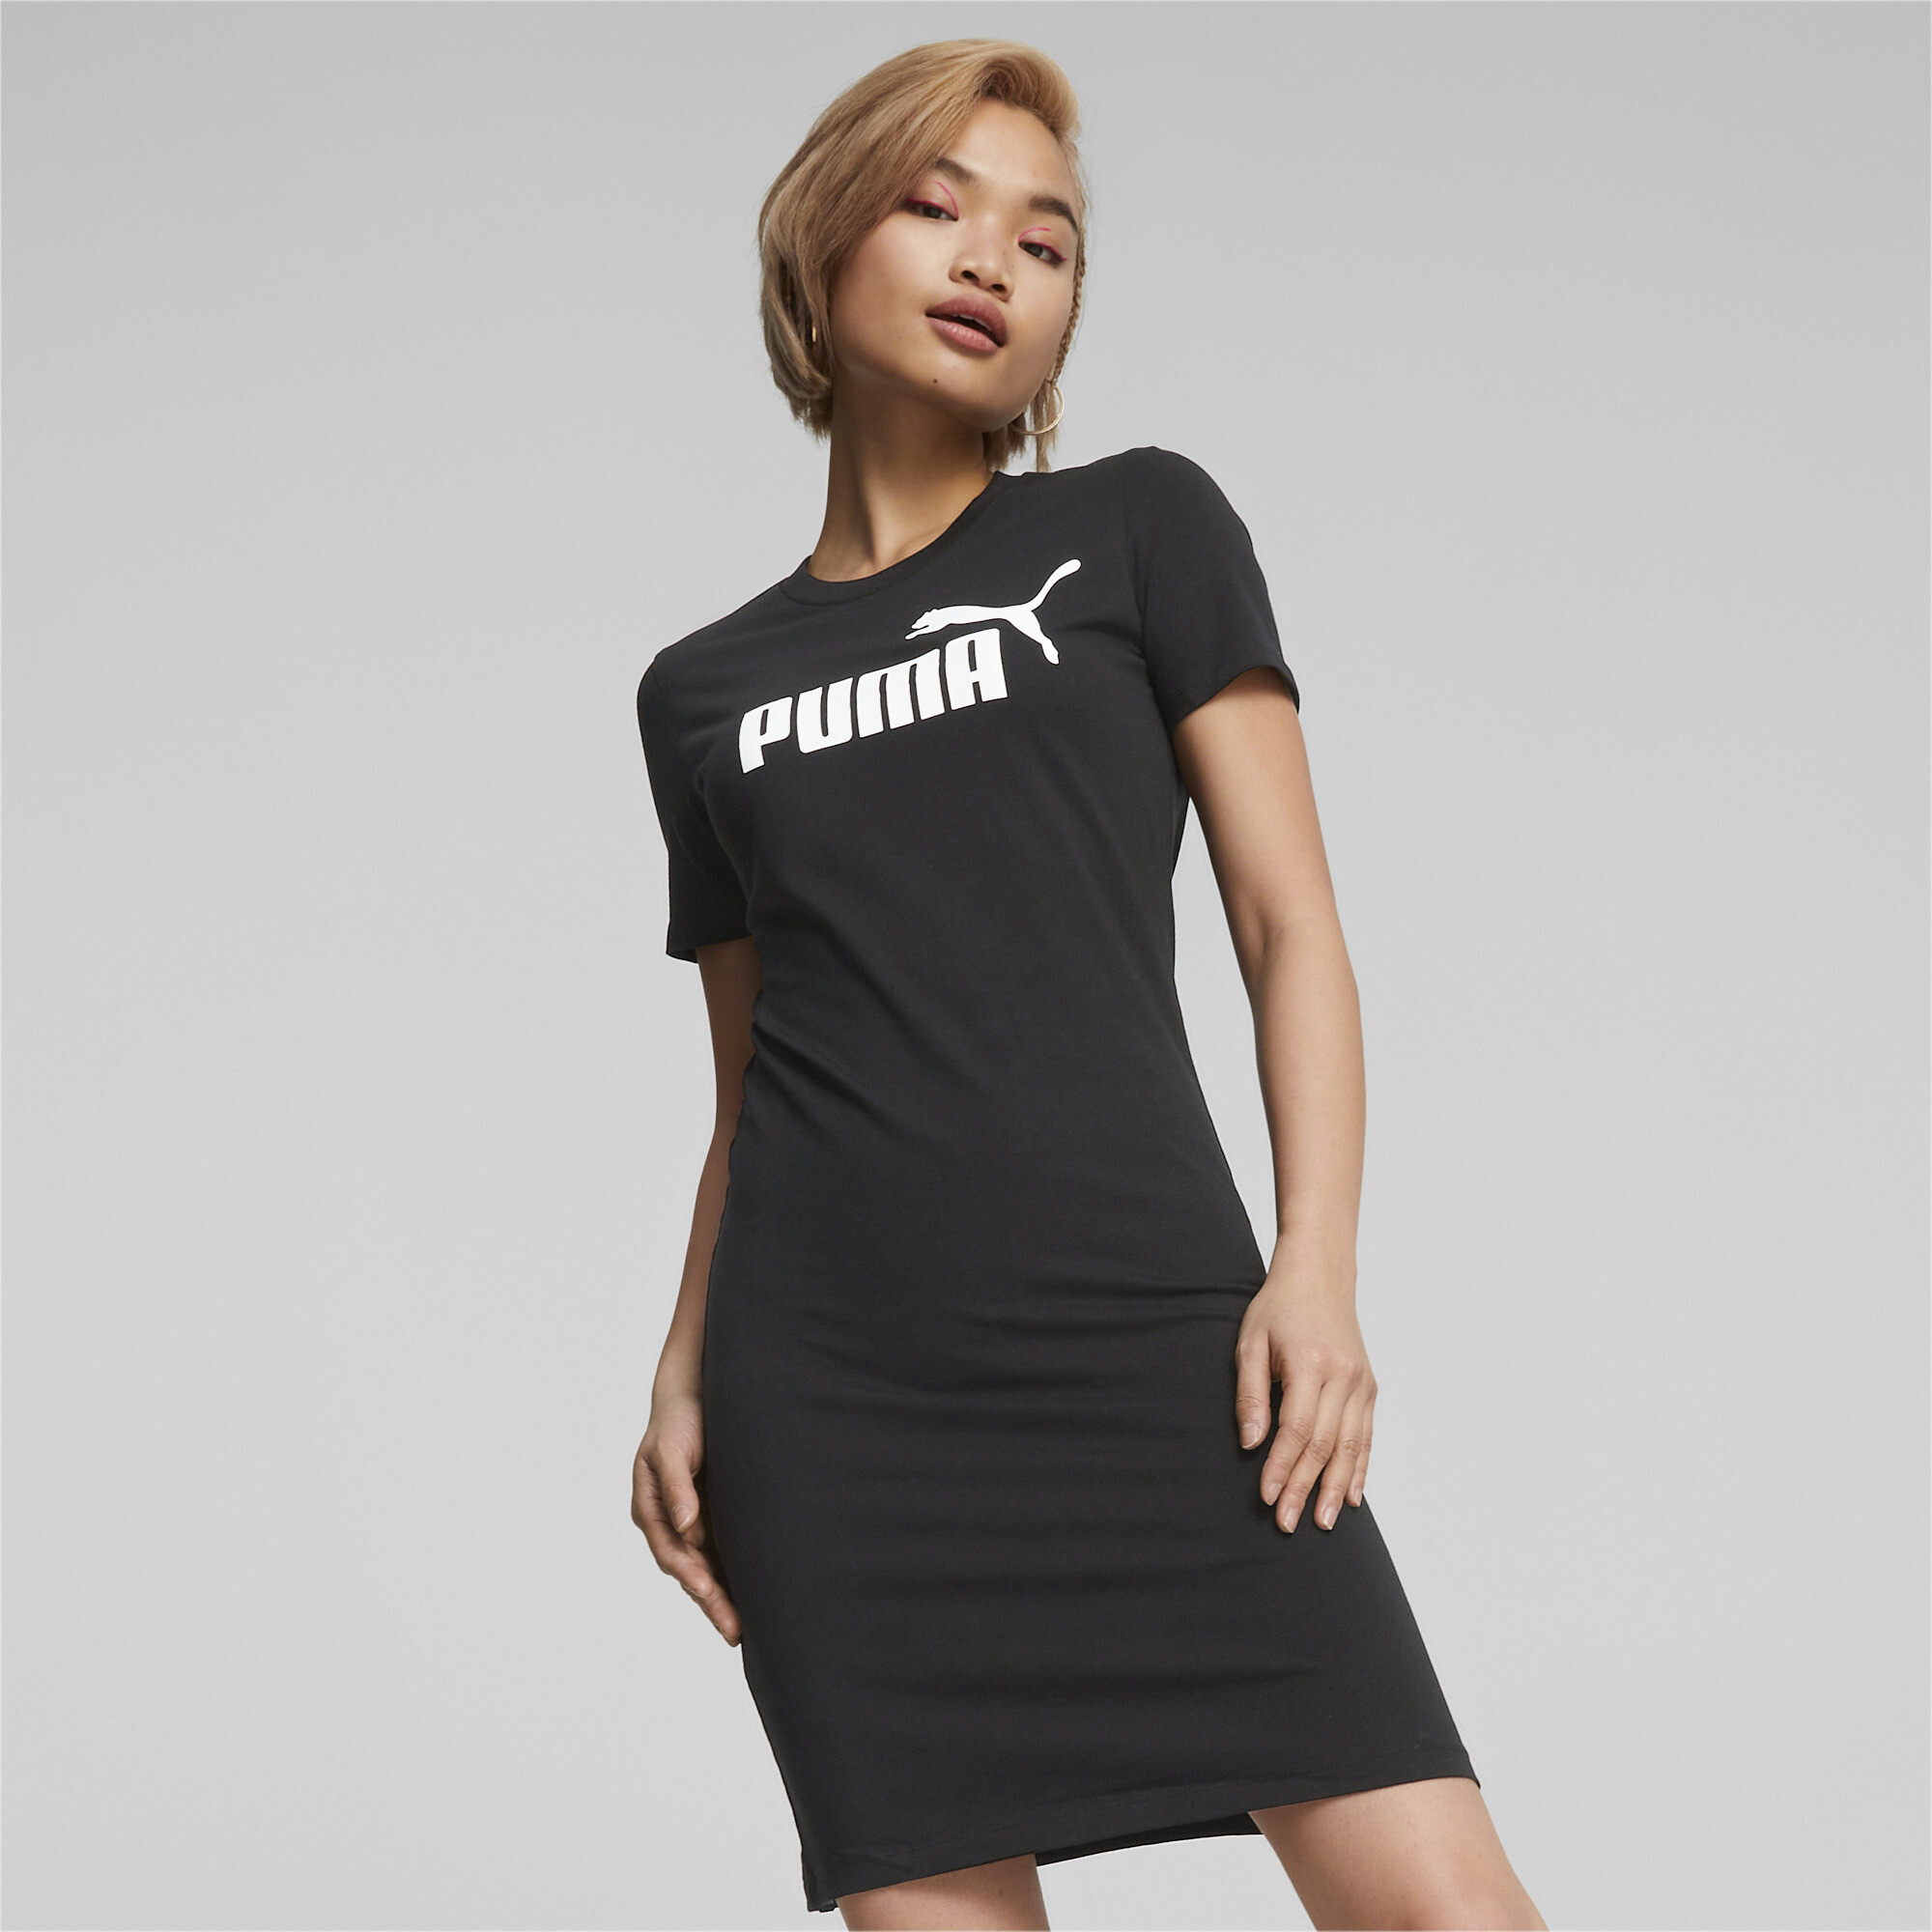 Women's Puma Essentials's Slim Tee Dress, Black, Size L, Clothing